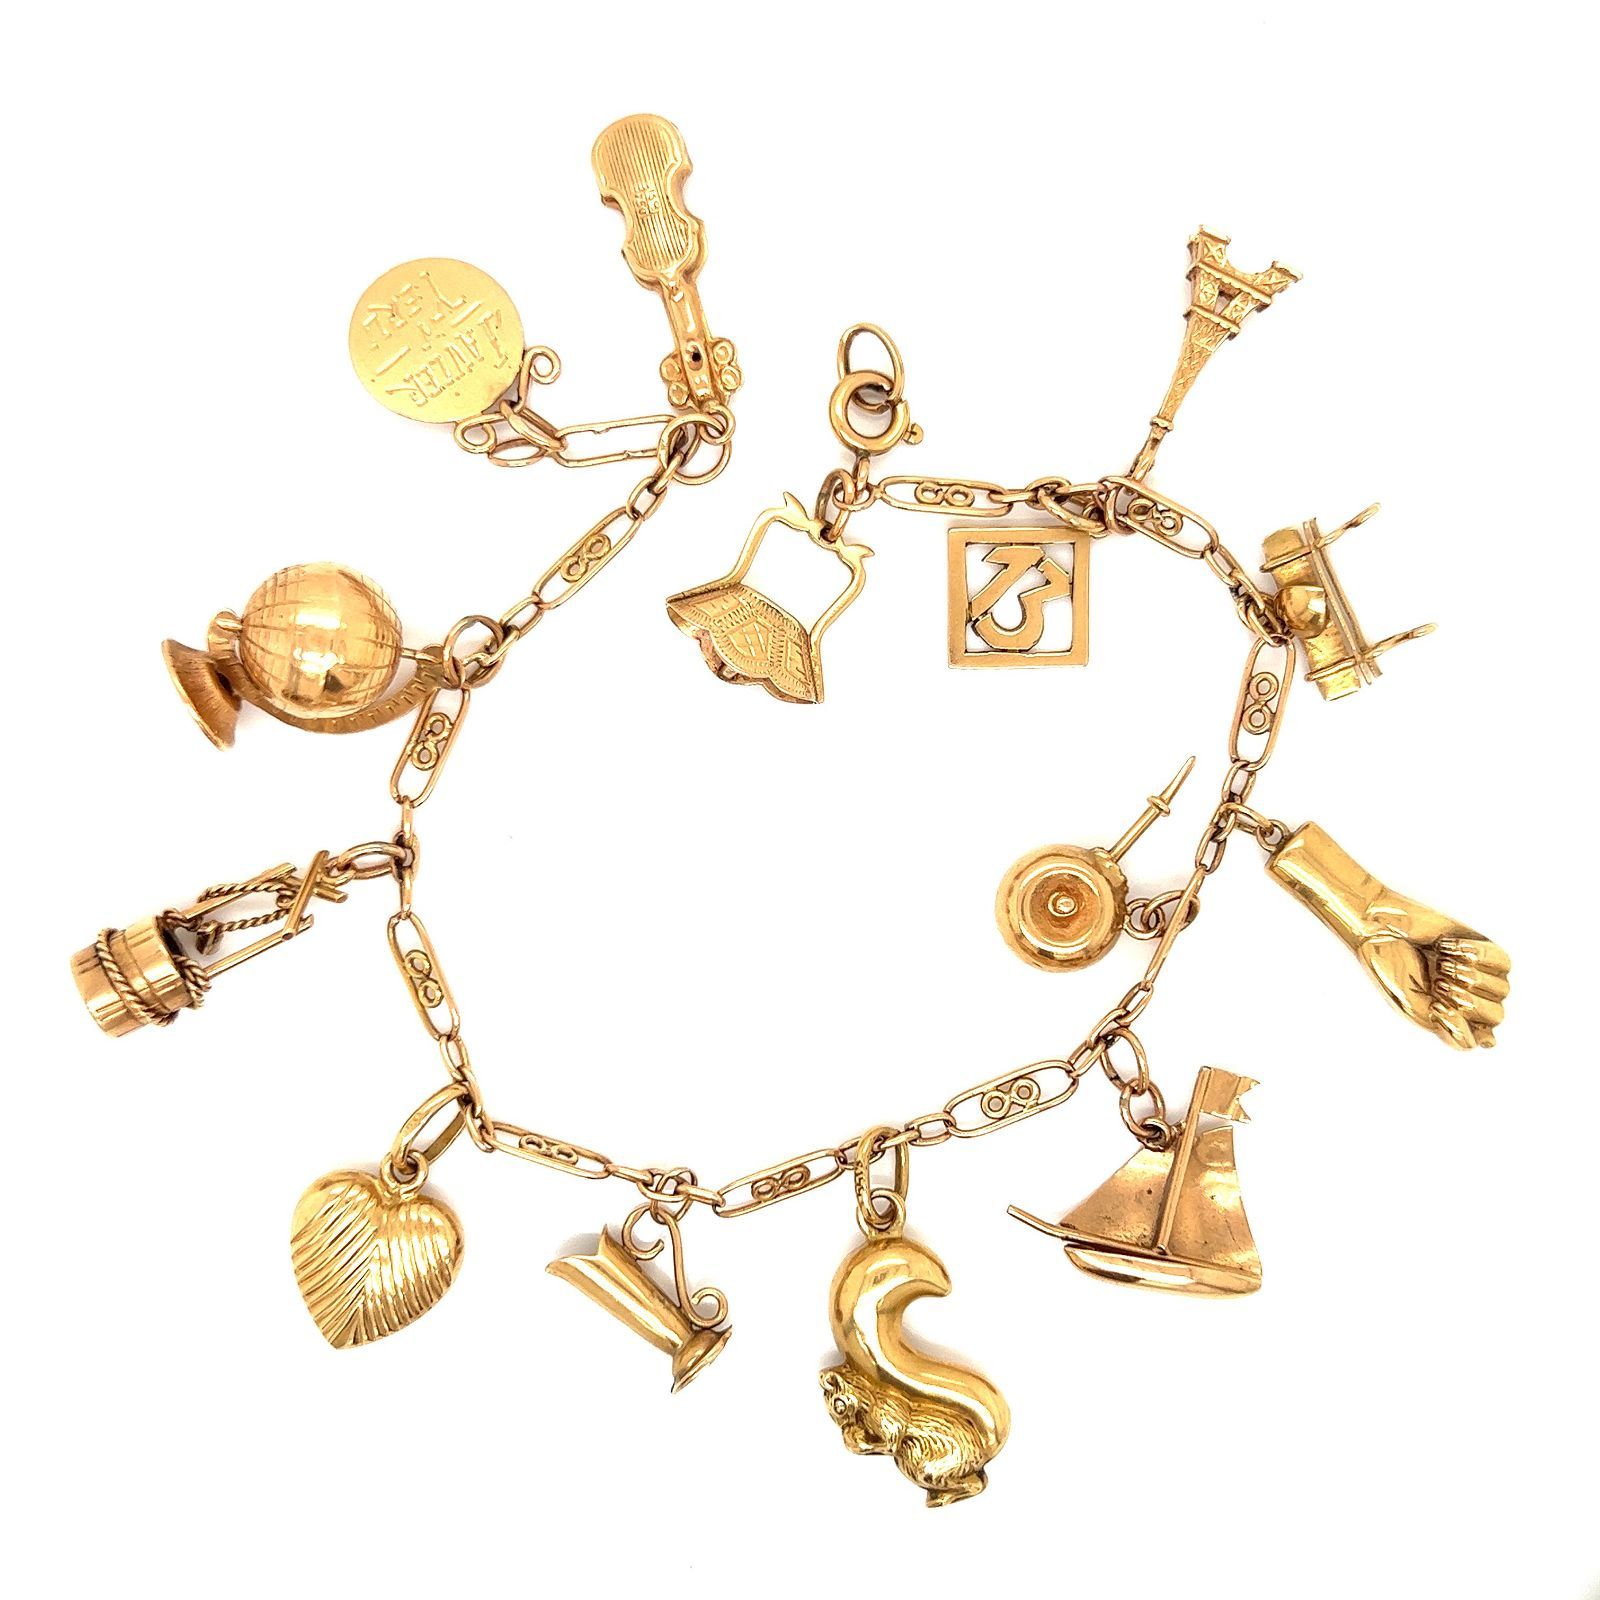 18k Charm Bracelet 18k Rosa Gold Gewicht 23.64g Charm Armband 8.5 "x1.16"